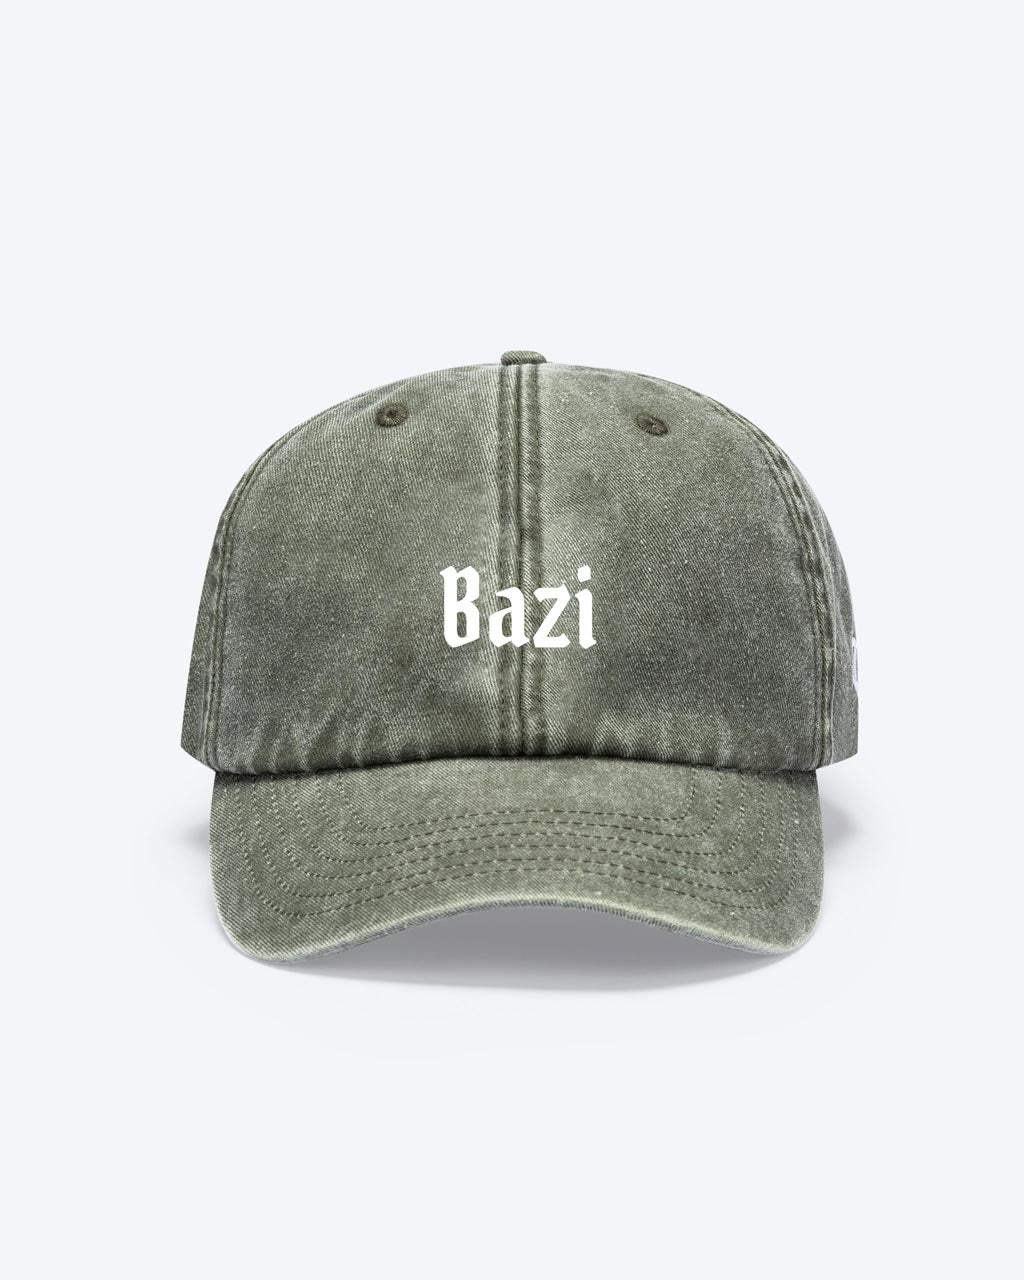 Eine bayerische Cap in der Farbe Vintage Khaki mit einem weißen "Bazi" Schriftzug vorne als Motiv zu erkennen.